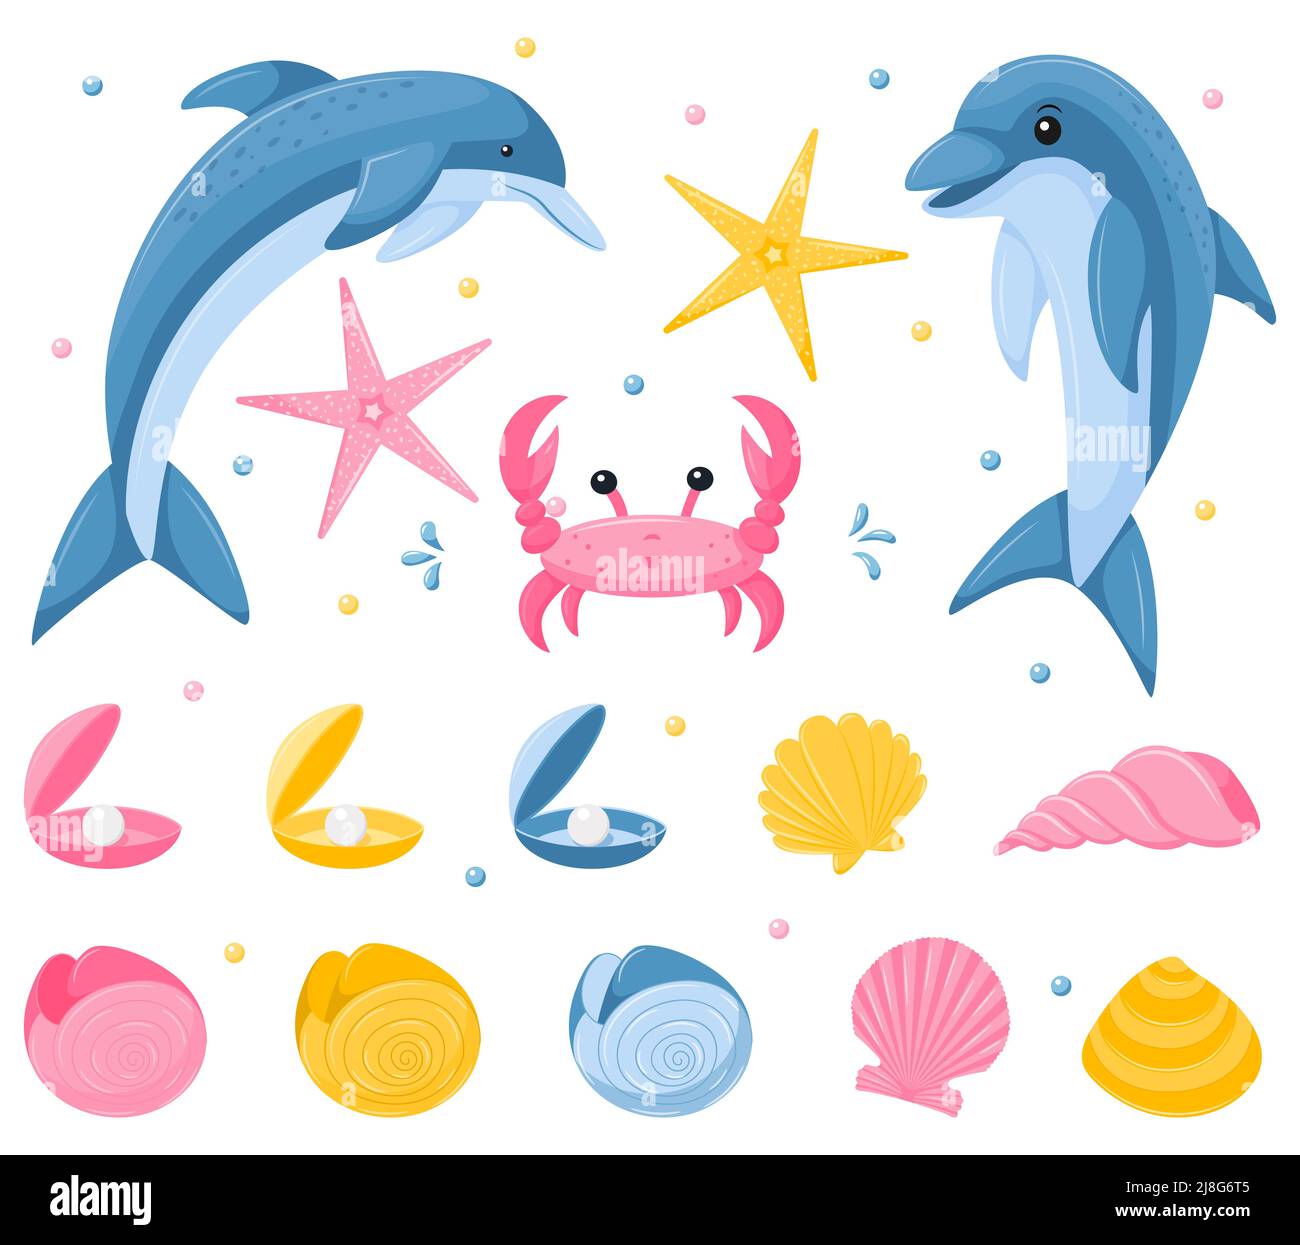 Eine Reihe von Meerestieren unter Wasser. Delfine, Krabben, Muscheln und Seesterne. Niedliche Figuren in einem flachen, Cartoon-Stil. Vektorgrafiken isoliert auf Stock Vektor